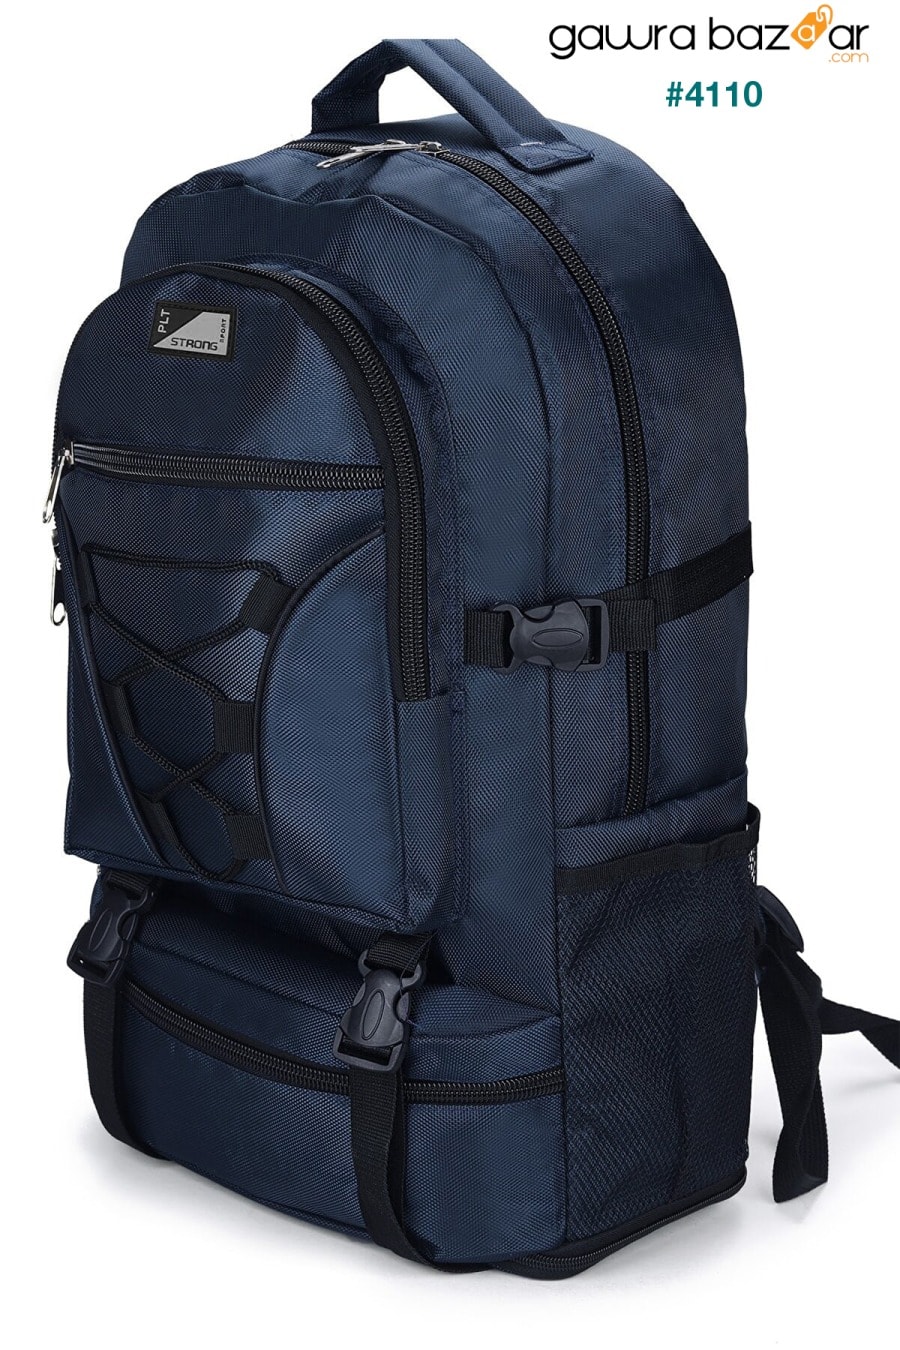 حقيبة ماونتينير St-02 مضادة للماء متعددة العيون للسفر والجبل أزرق كحلي Fiyaka 6